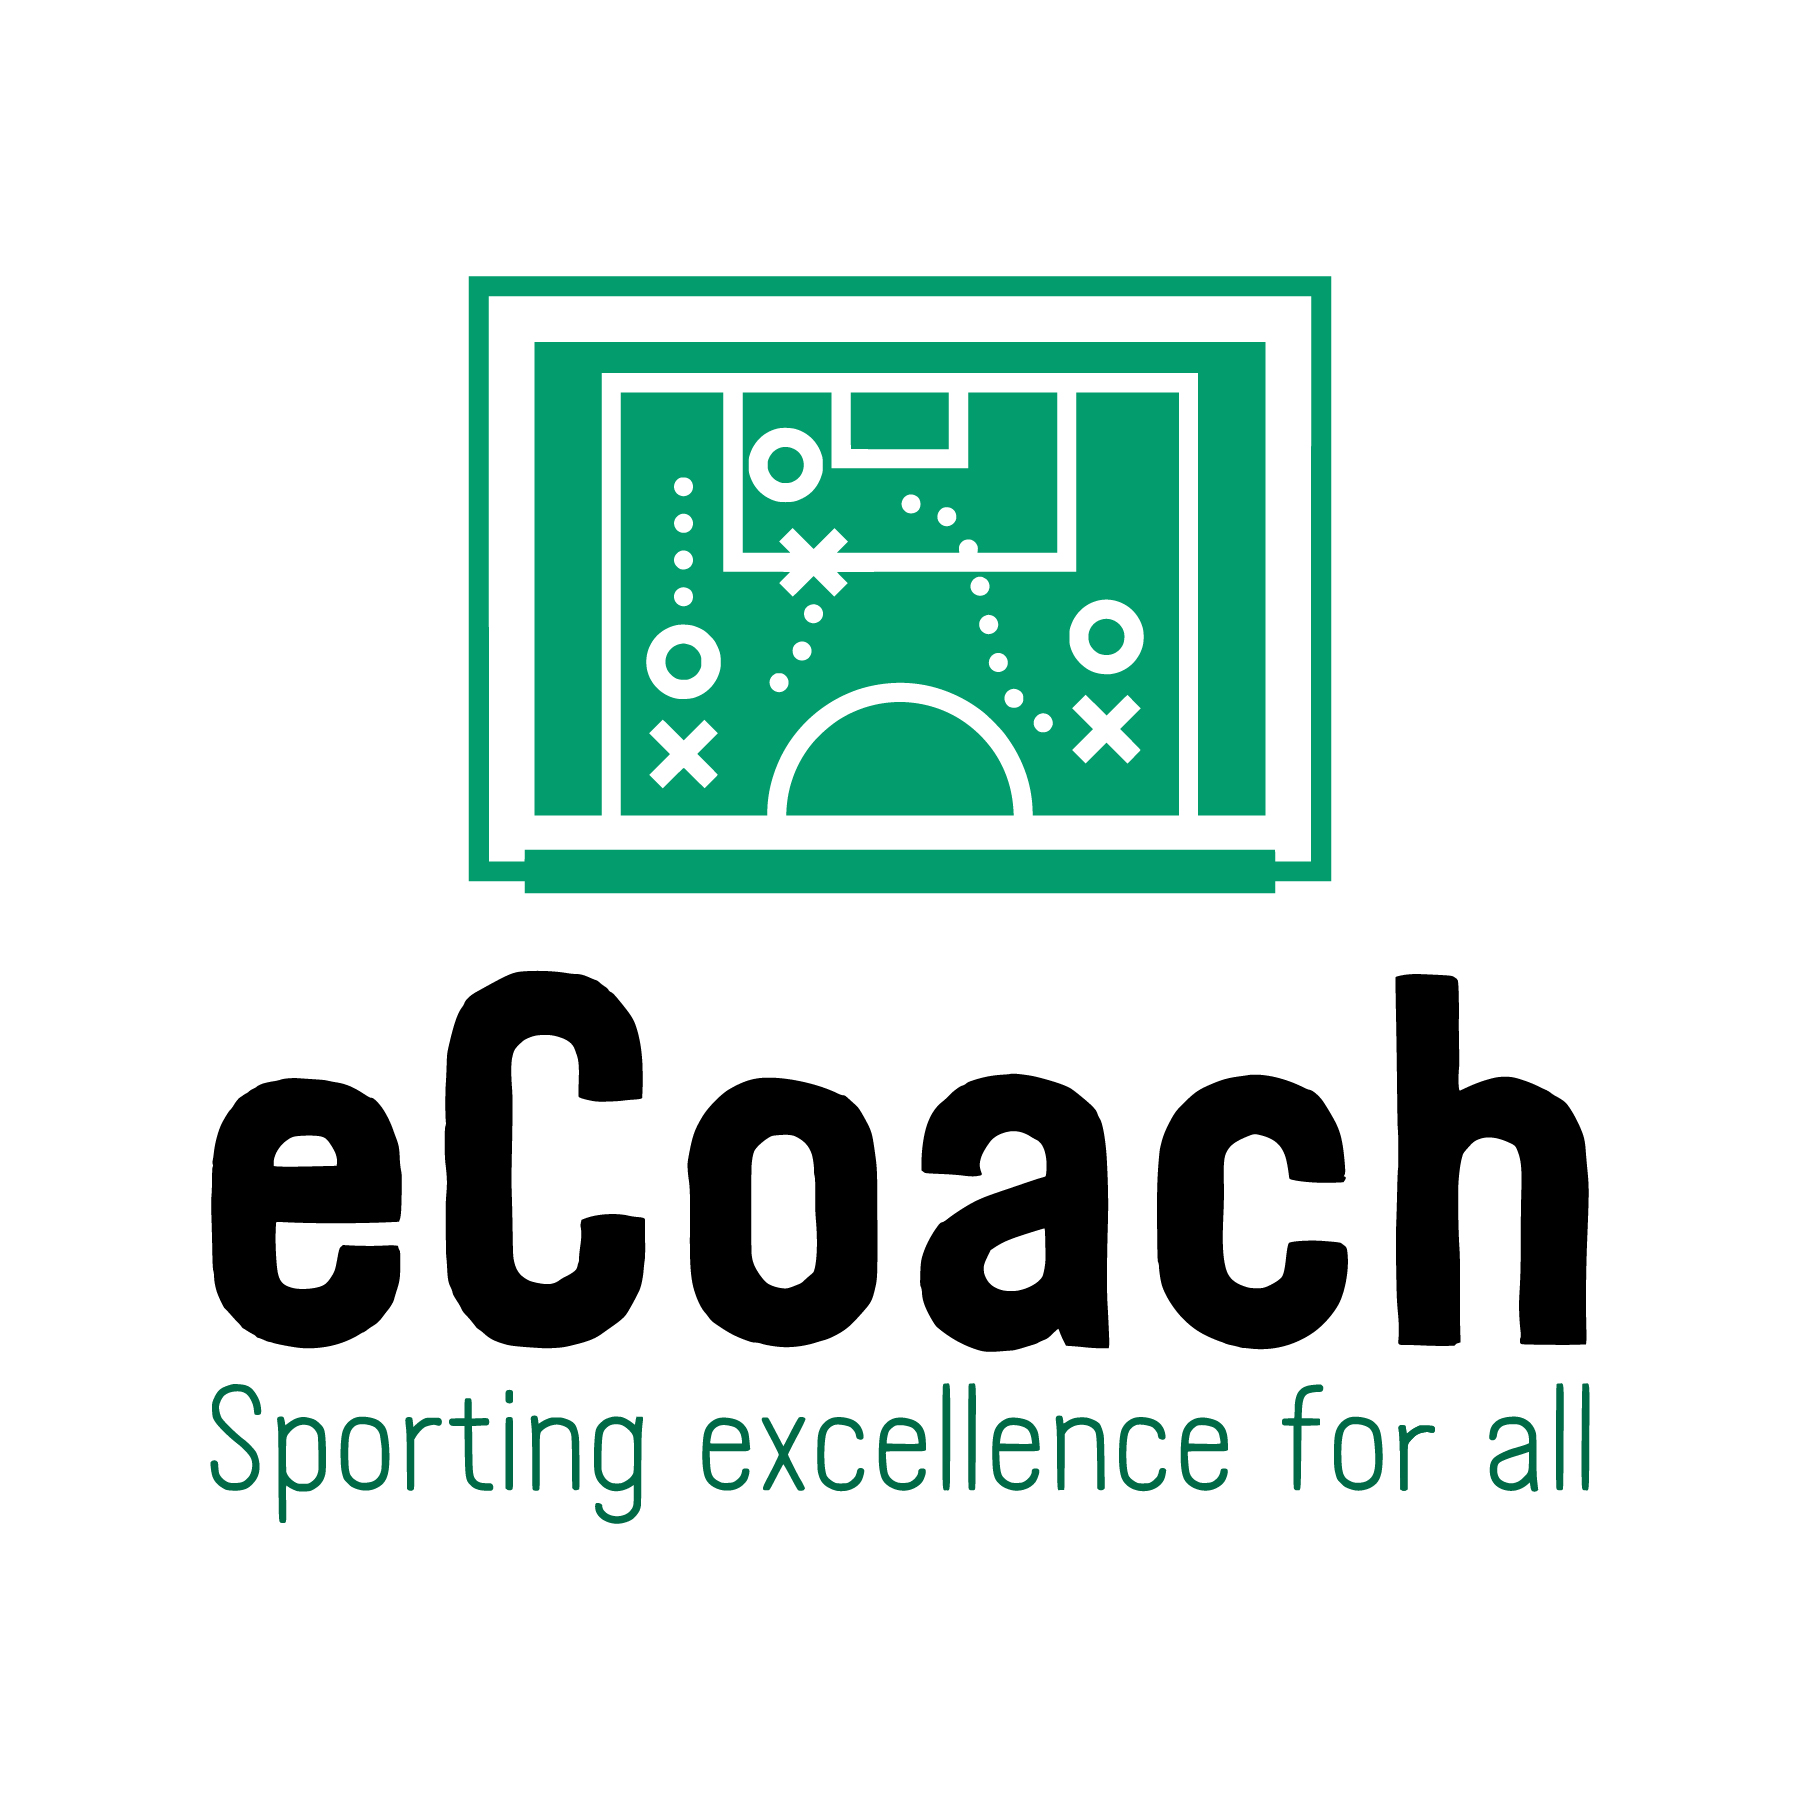 ecoach logo